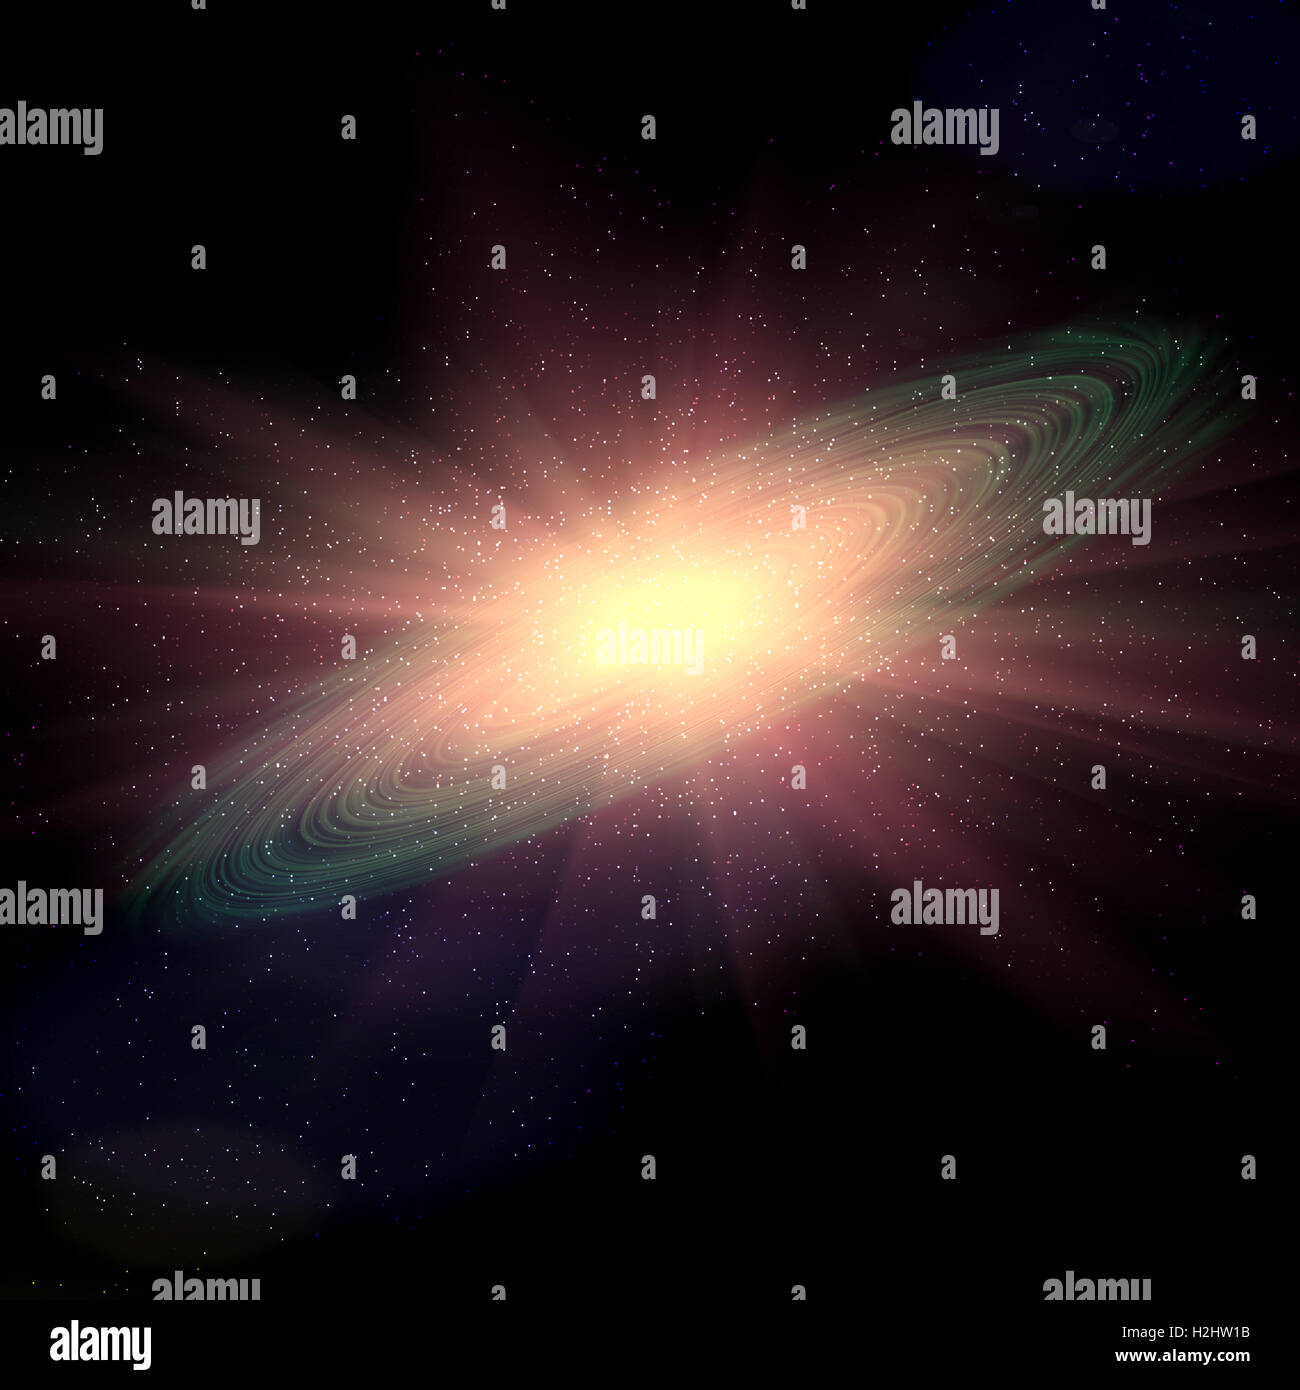 Résumé de l'univers de l'espace illustration historique : explosion de supernova dans la galaxie active centre. Banque D'Images